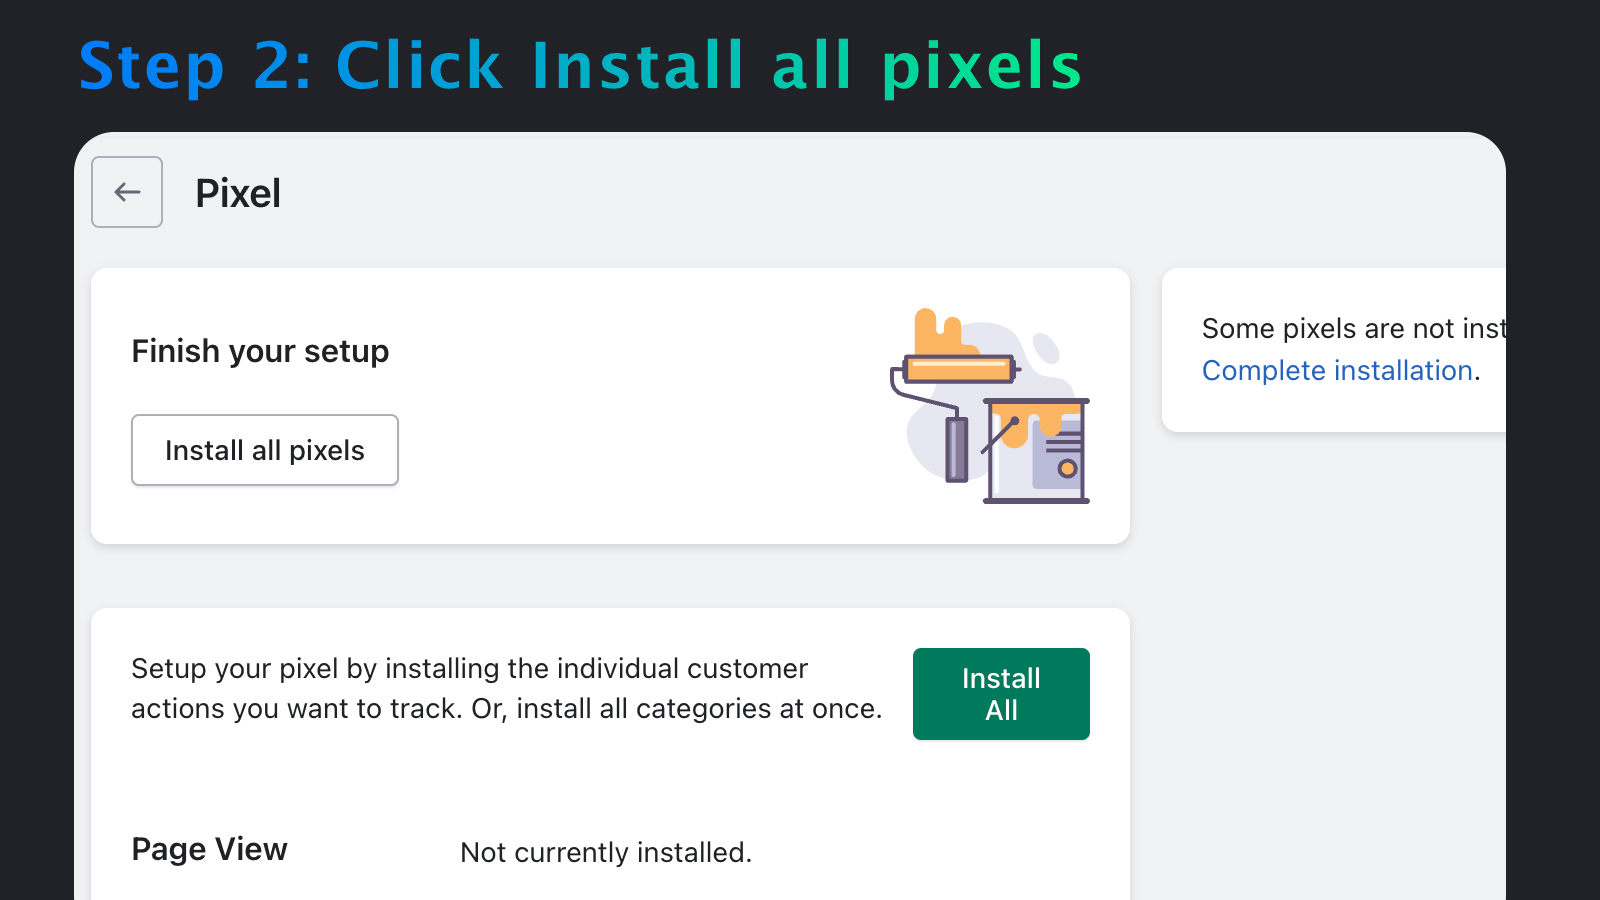 Step 2: Click install all pixels